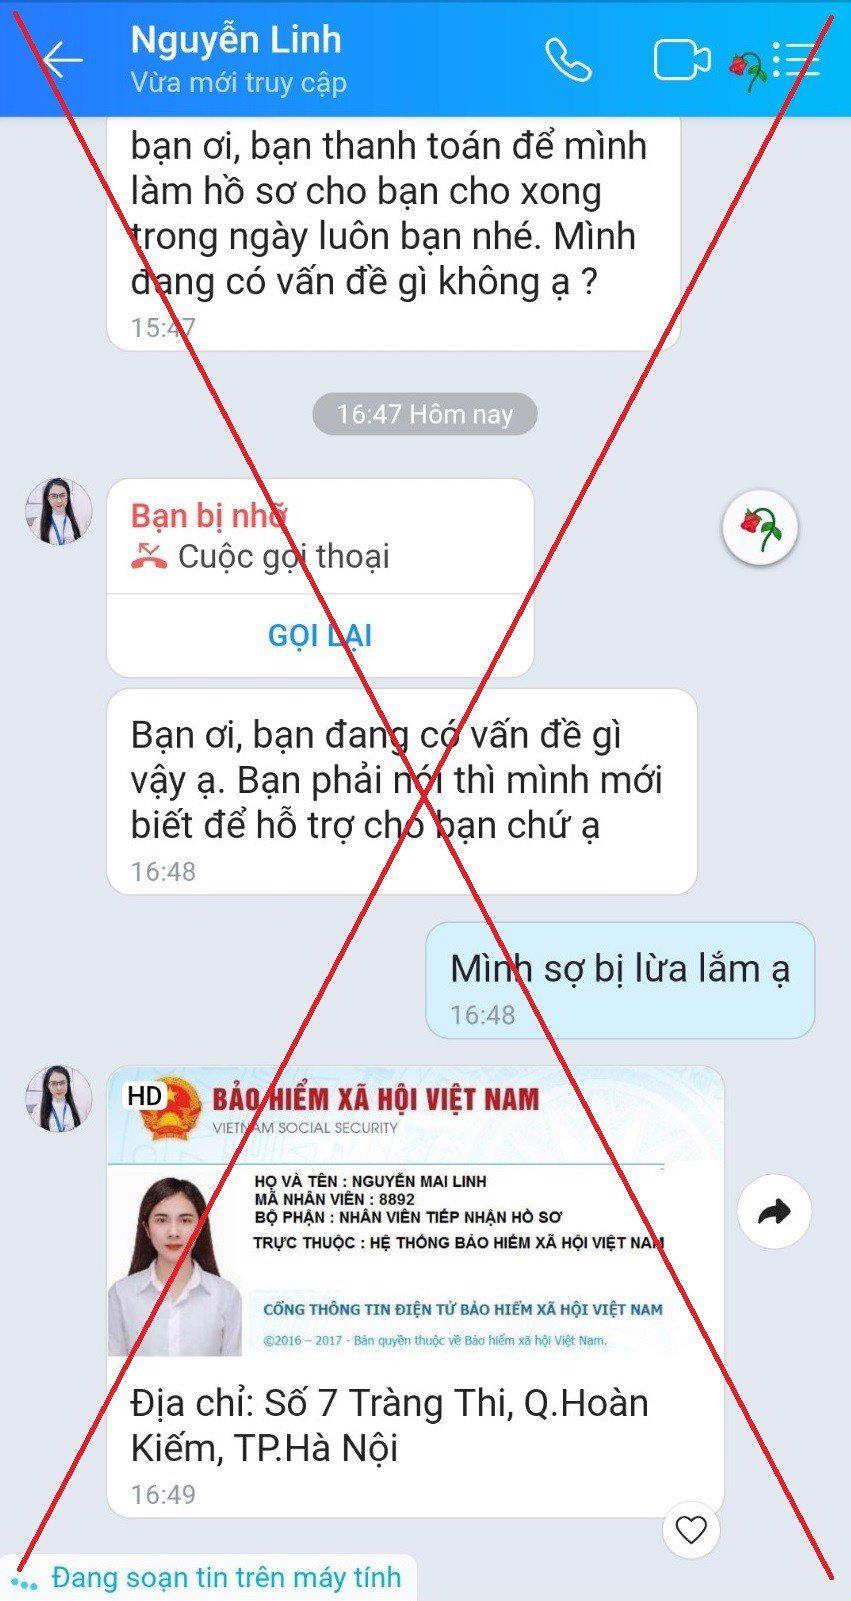 Ảnh - Bảo hiểm xã hội Việt Nam cung cấp. 